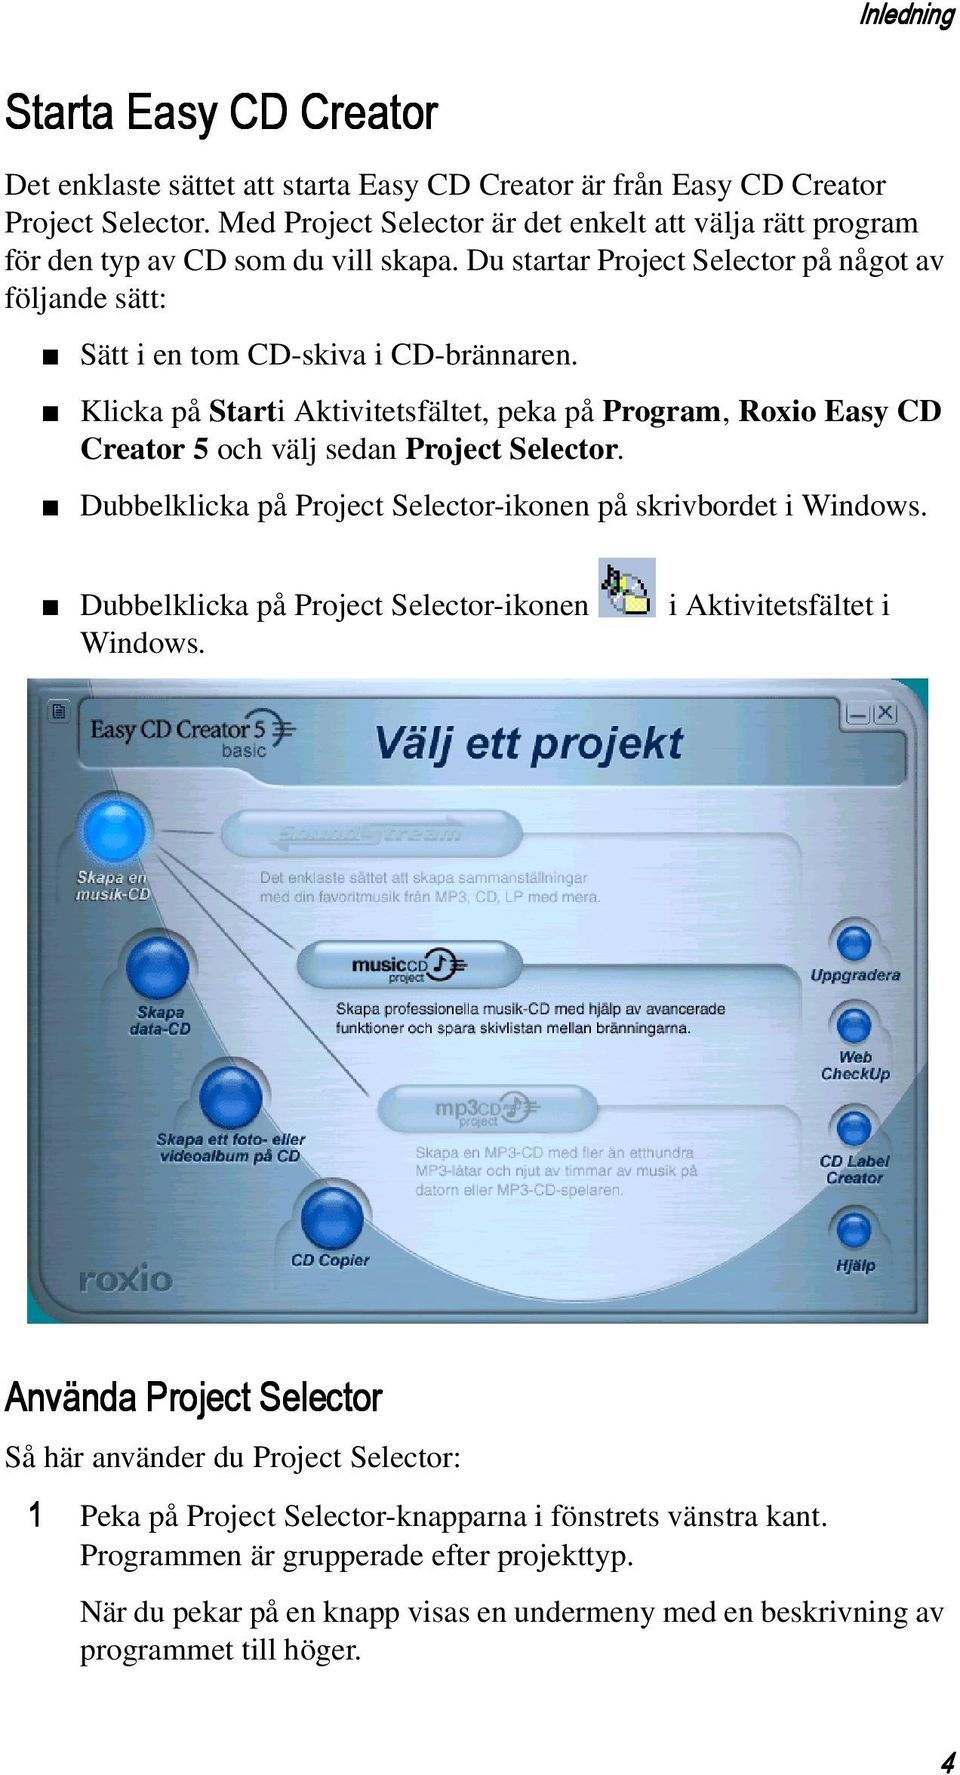 Klicka på Starti Aktivitetsfältet, peka på Program, Roxio Easy CD Creator 5 och välj sedan Project Selector. Dubbelklicka på Project Selector-ikonen på skrivbordet i Windows.